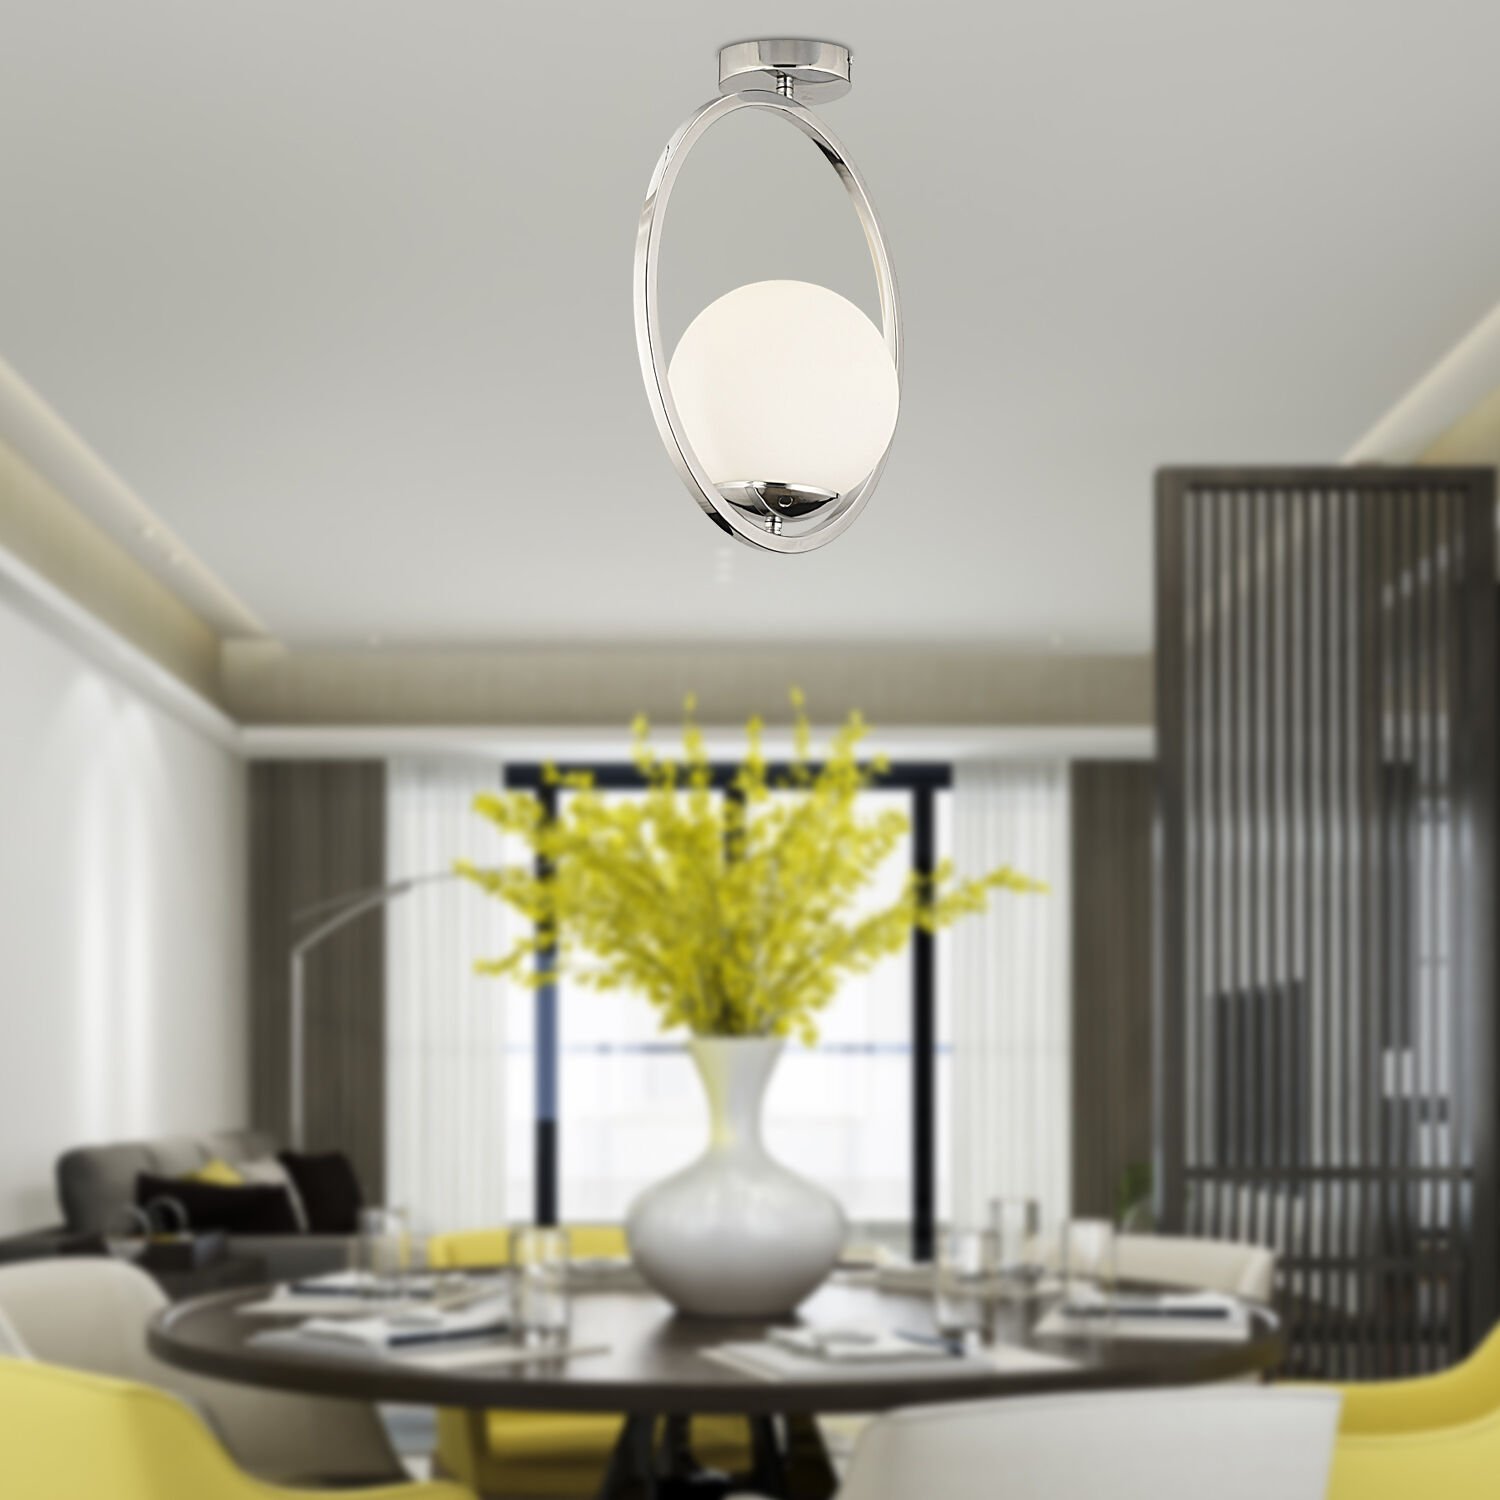 Lifos Tekli Krom Kaplamalı Plafonyer Modern Mutfak Salon Avize